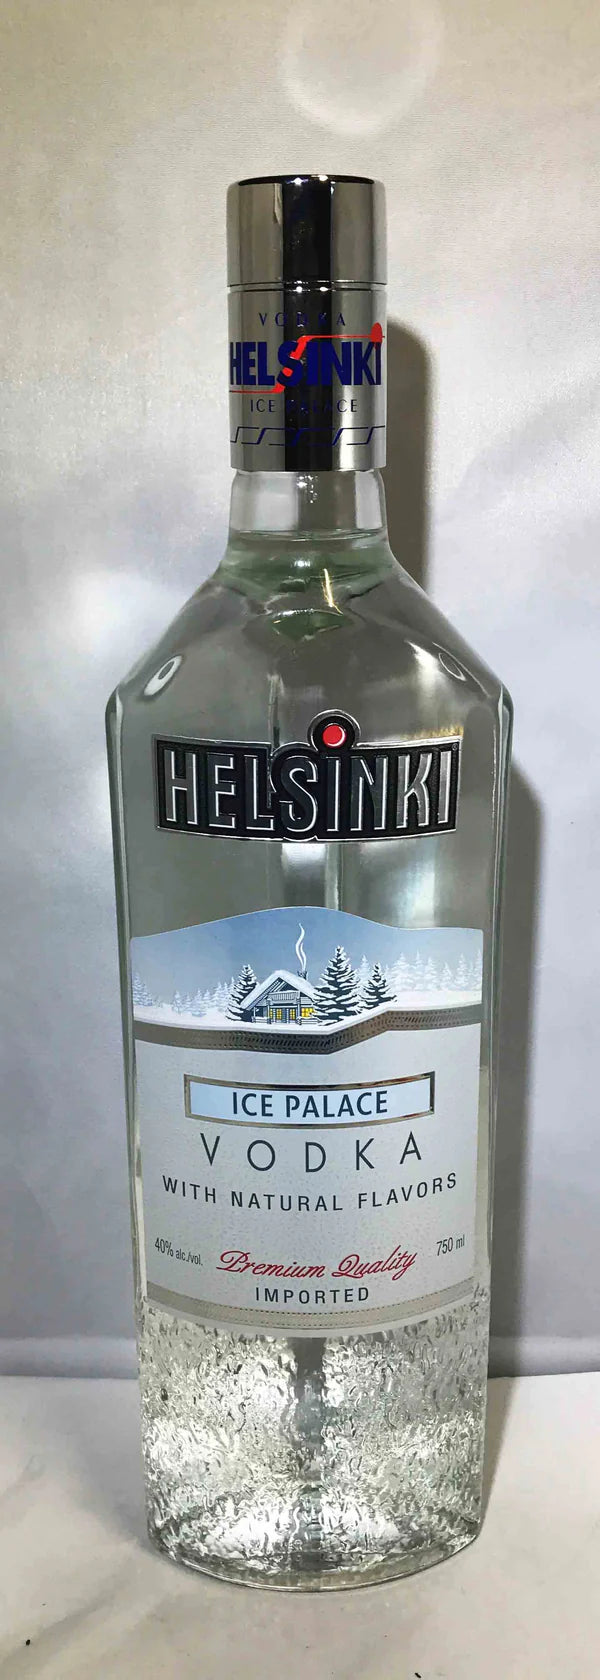 Helsinki Ice Palace Vodka